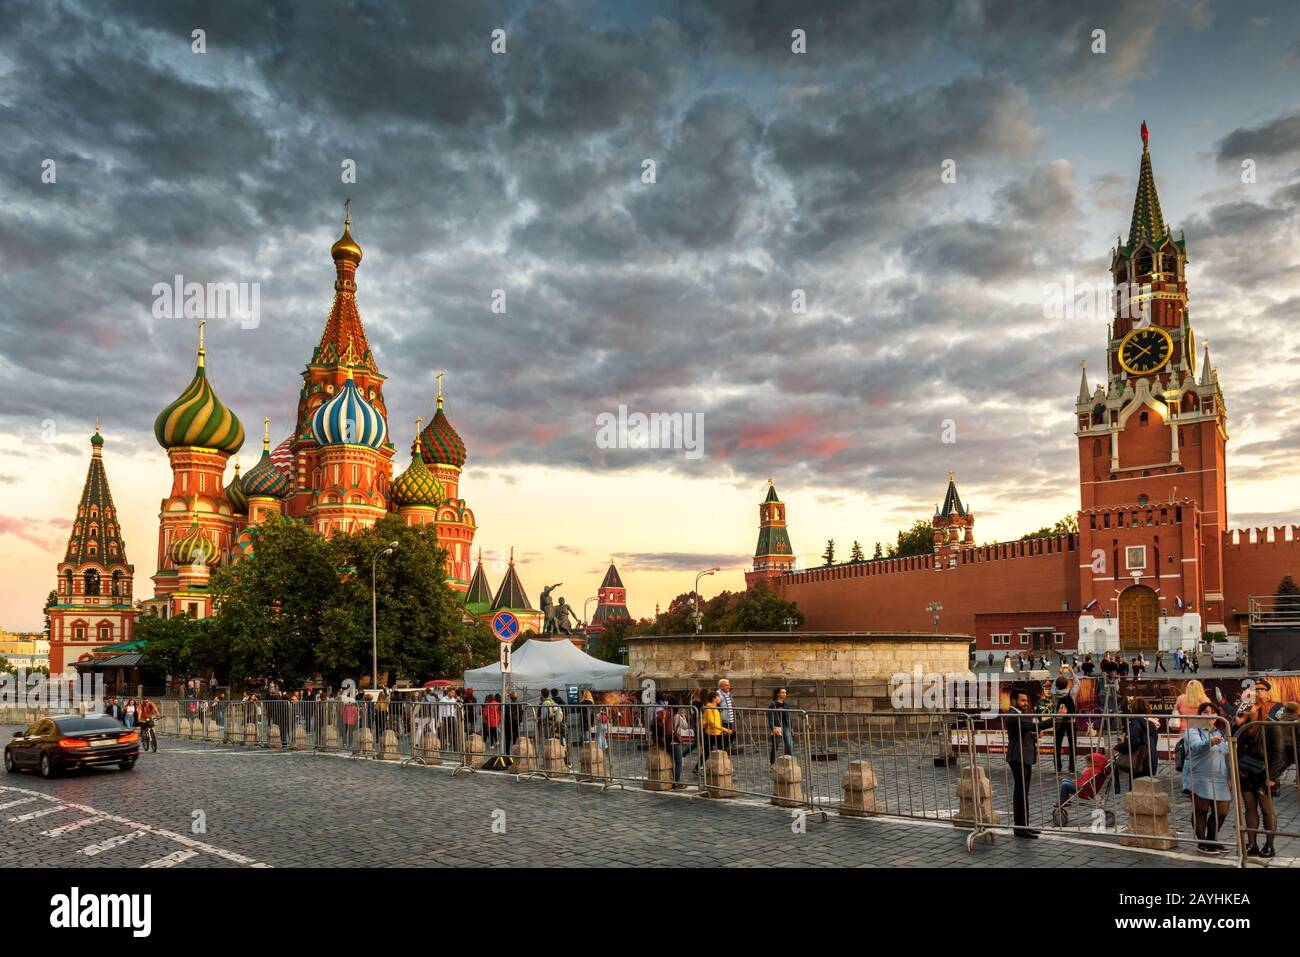 Moskau - 22. August 2018: St. Basil's Cathedral und Moskauer Kreml auf dem Roten Platz bei Sonnenuntergang, Russland. Es ist die wichtigste Touristenattraktion Moskaus. Pe Stockfoto